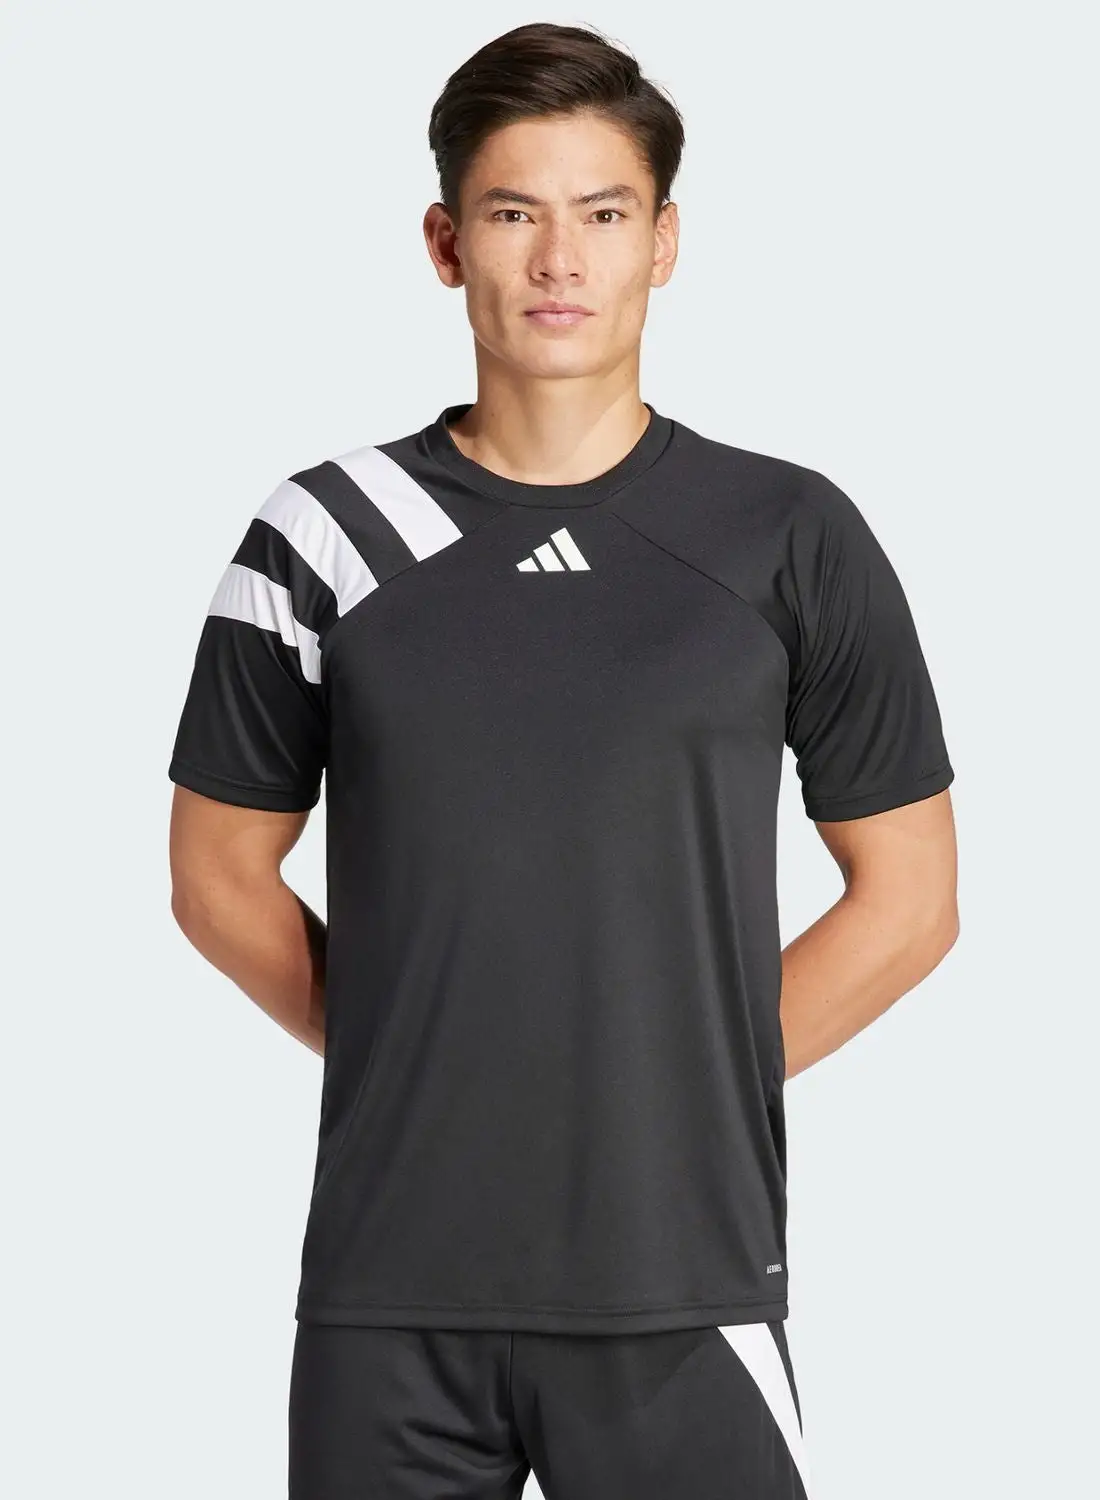 Adidas Fortore23 Jersey T-Shirt